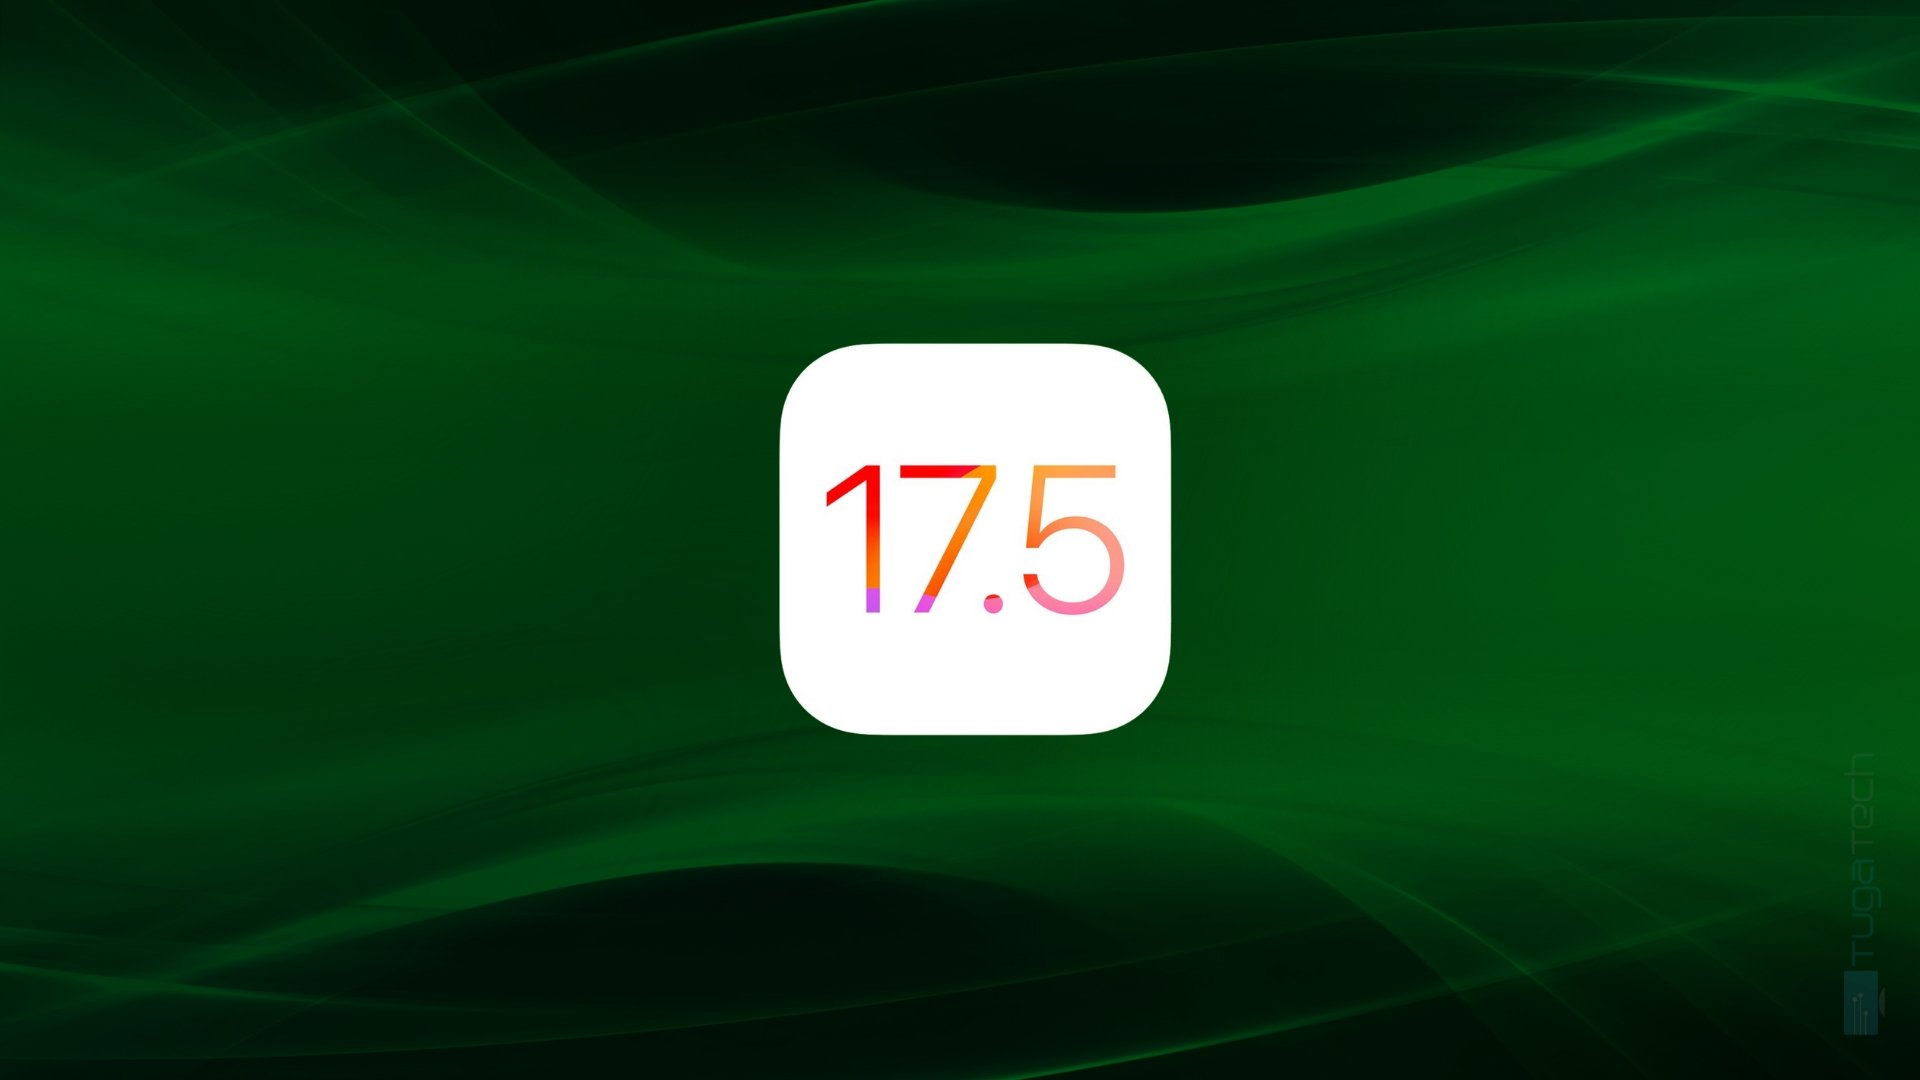 Apple iOS 17.5